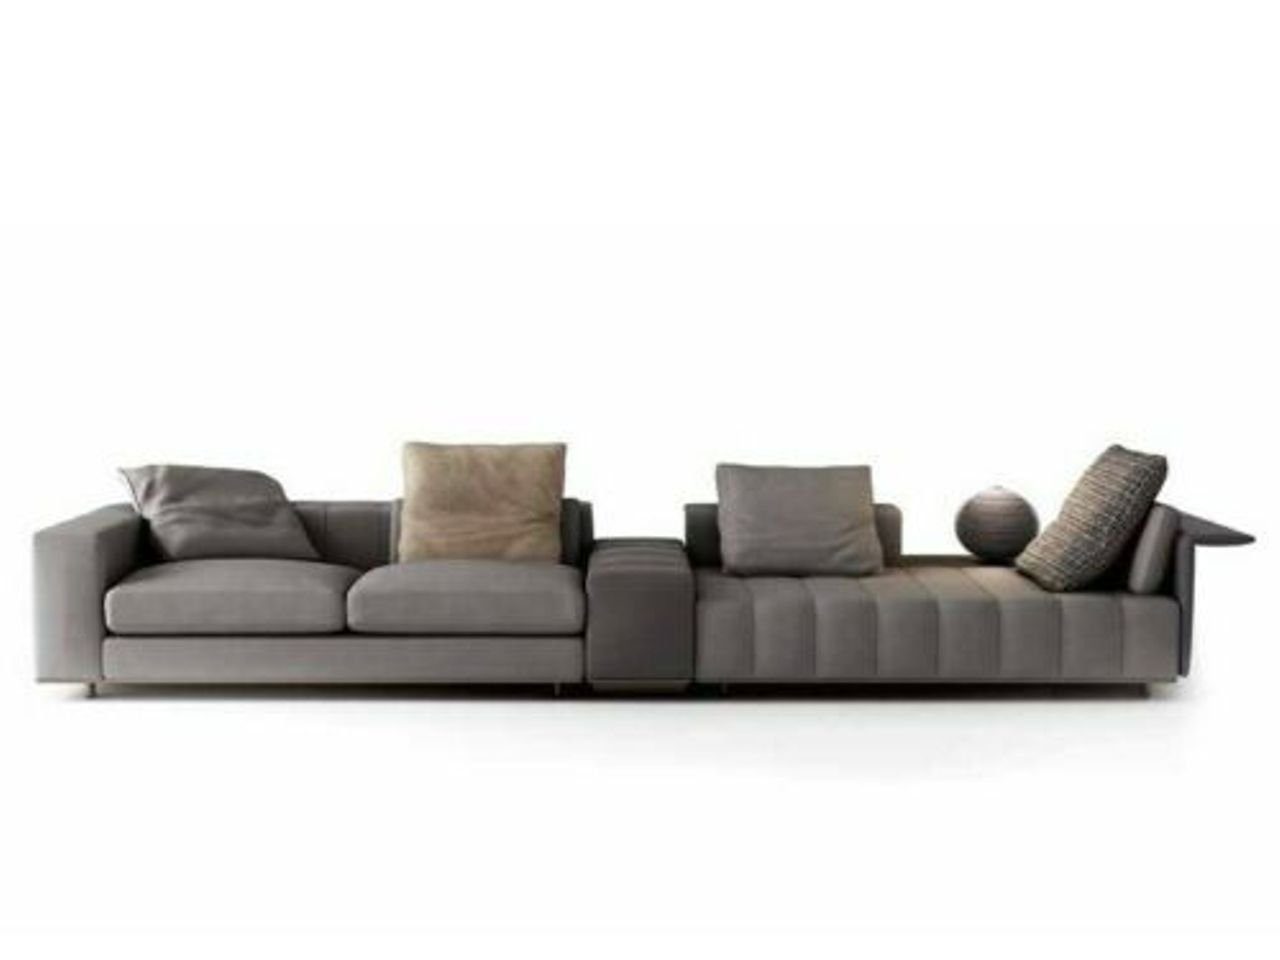 JVmoebel Wohnzimmer-Set, Big Sofa 2 Sitzer + Chaiselounge Luxus Leder Eckcouchen Eck Polster Silber